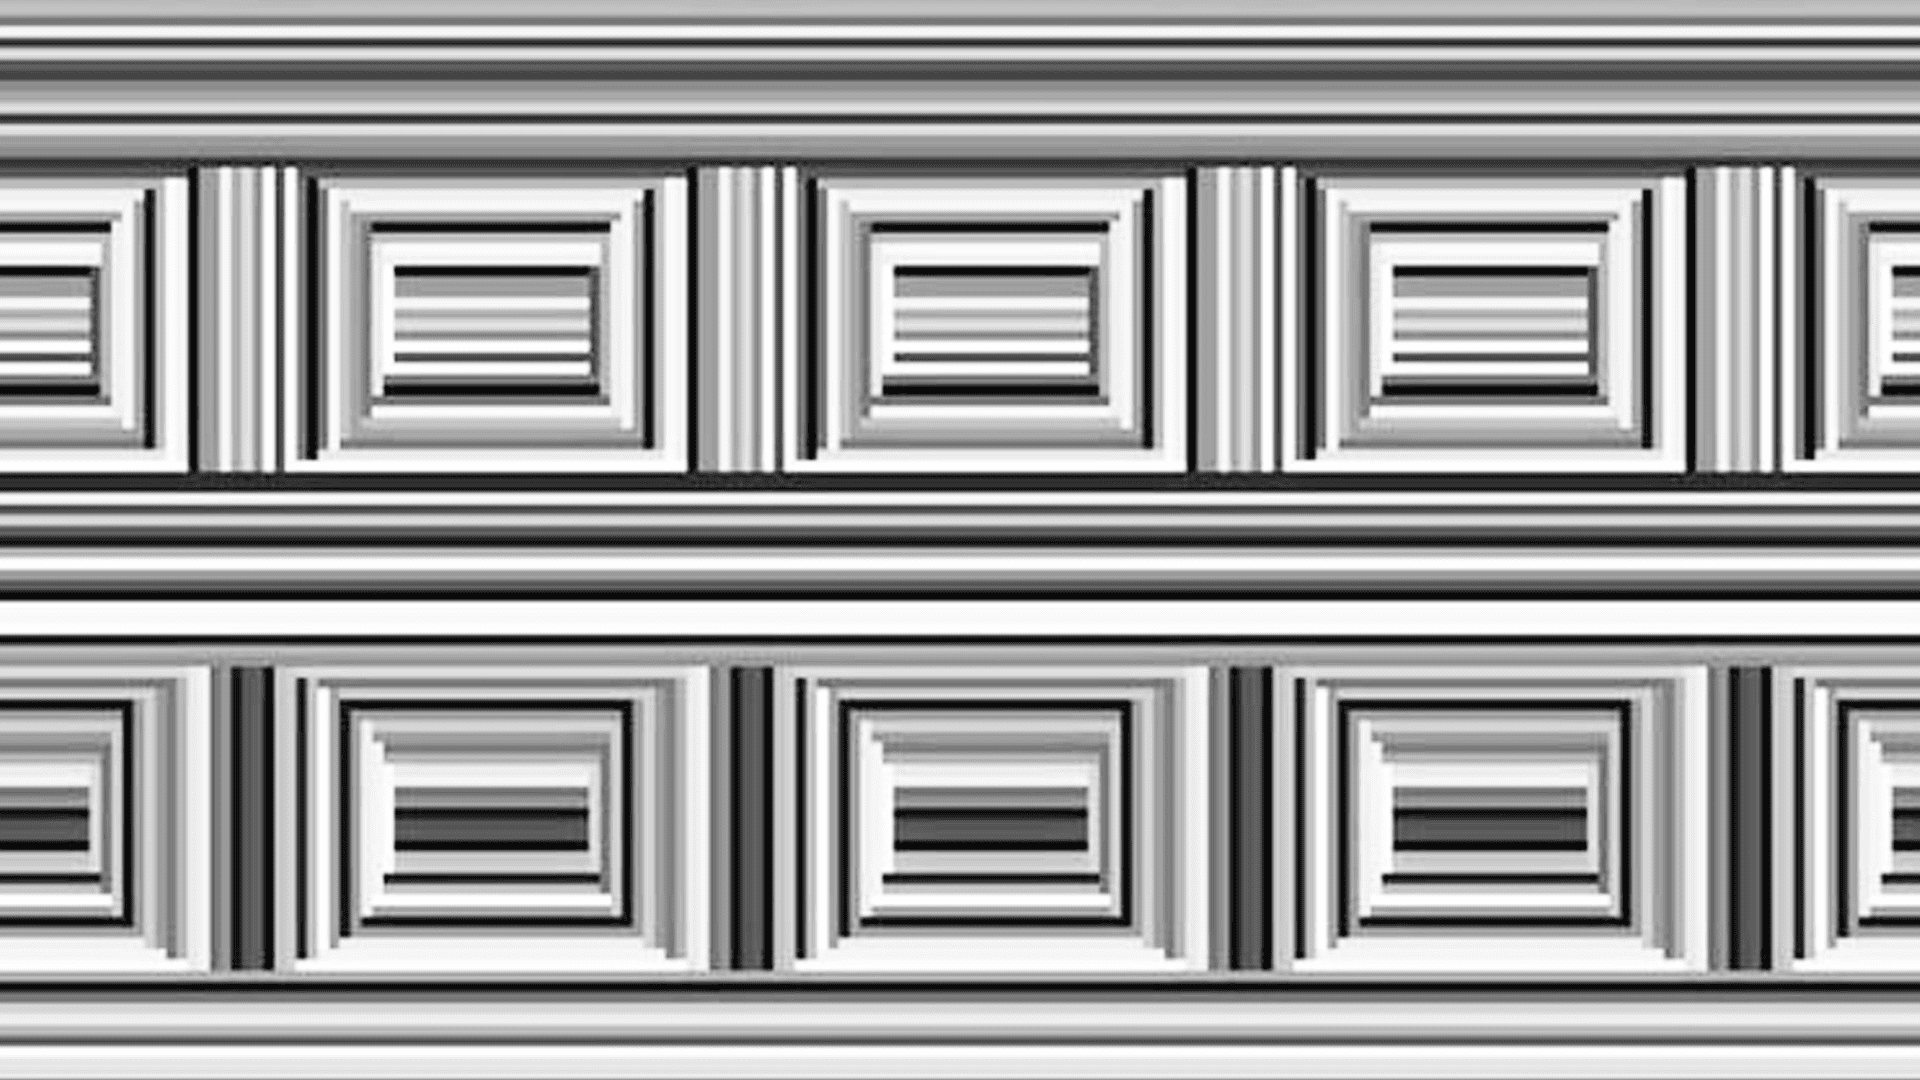 ¿Cómo hay 16 círculos en esta ilusión óptica?